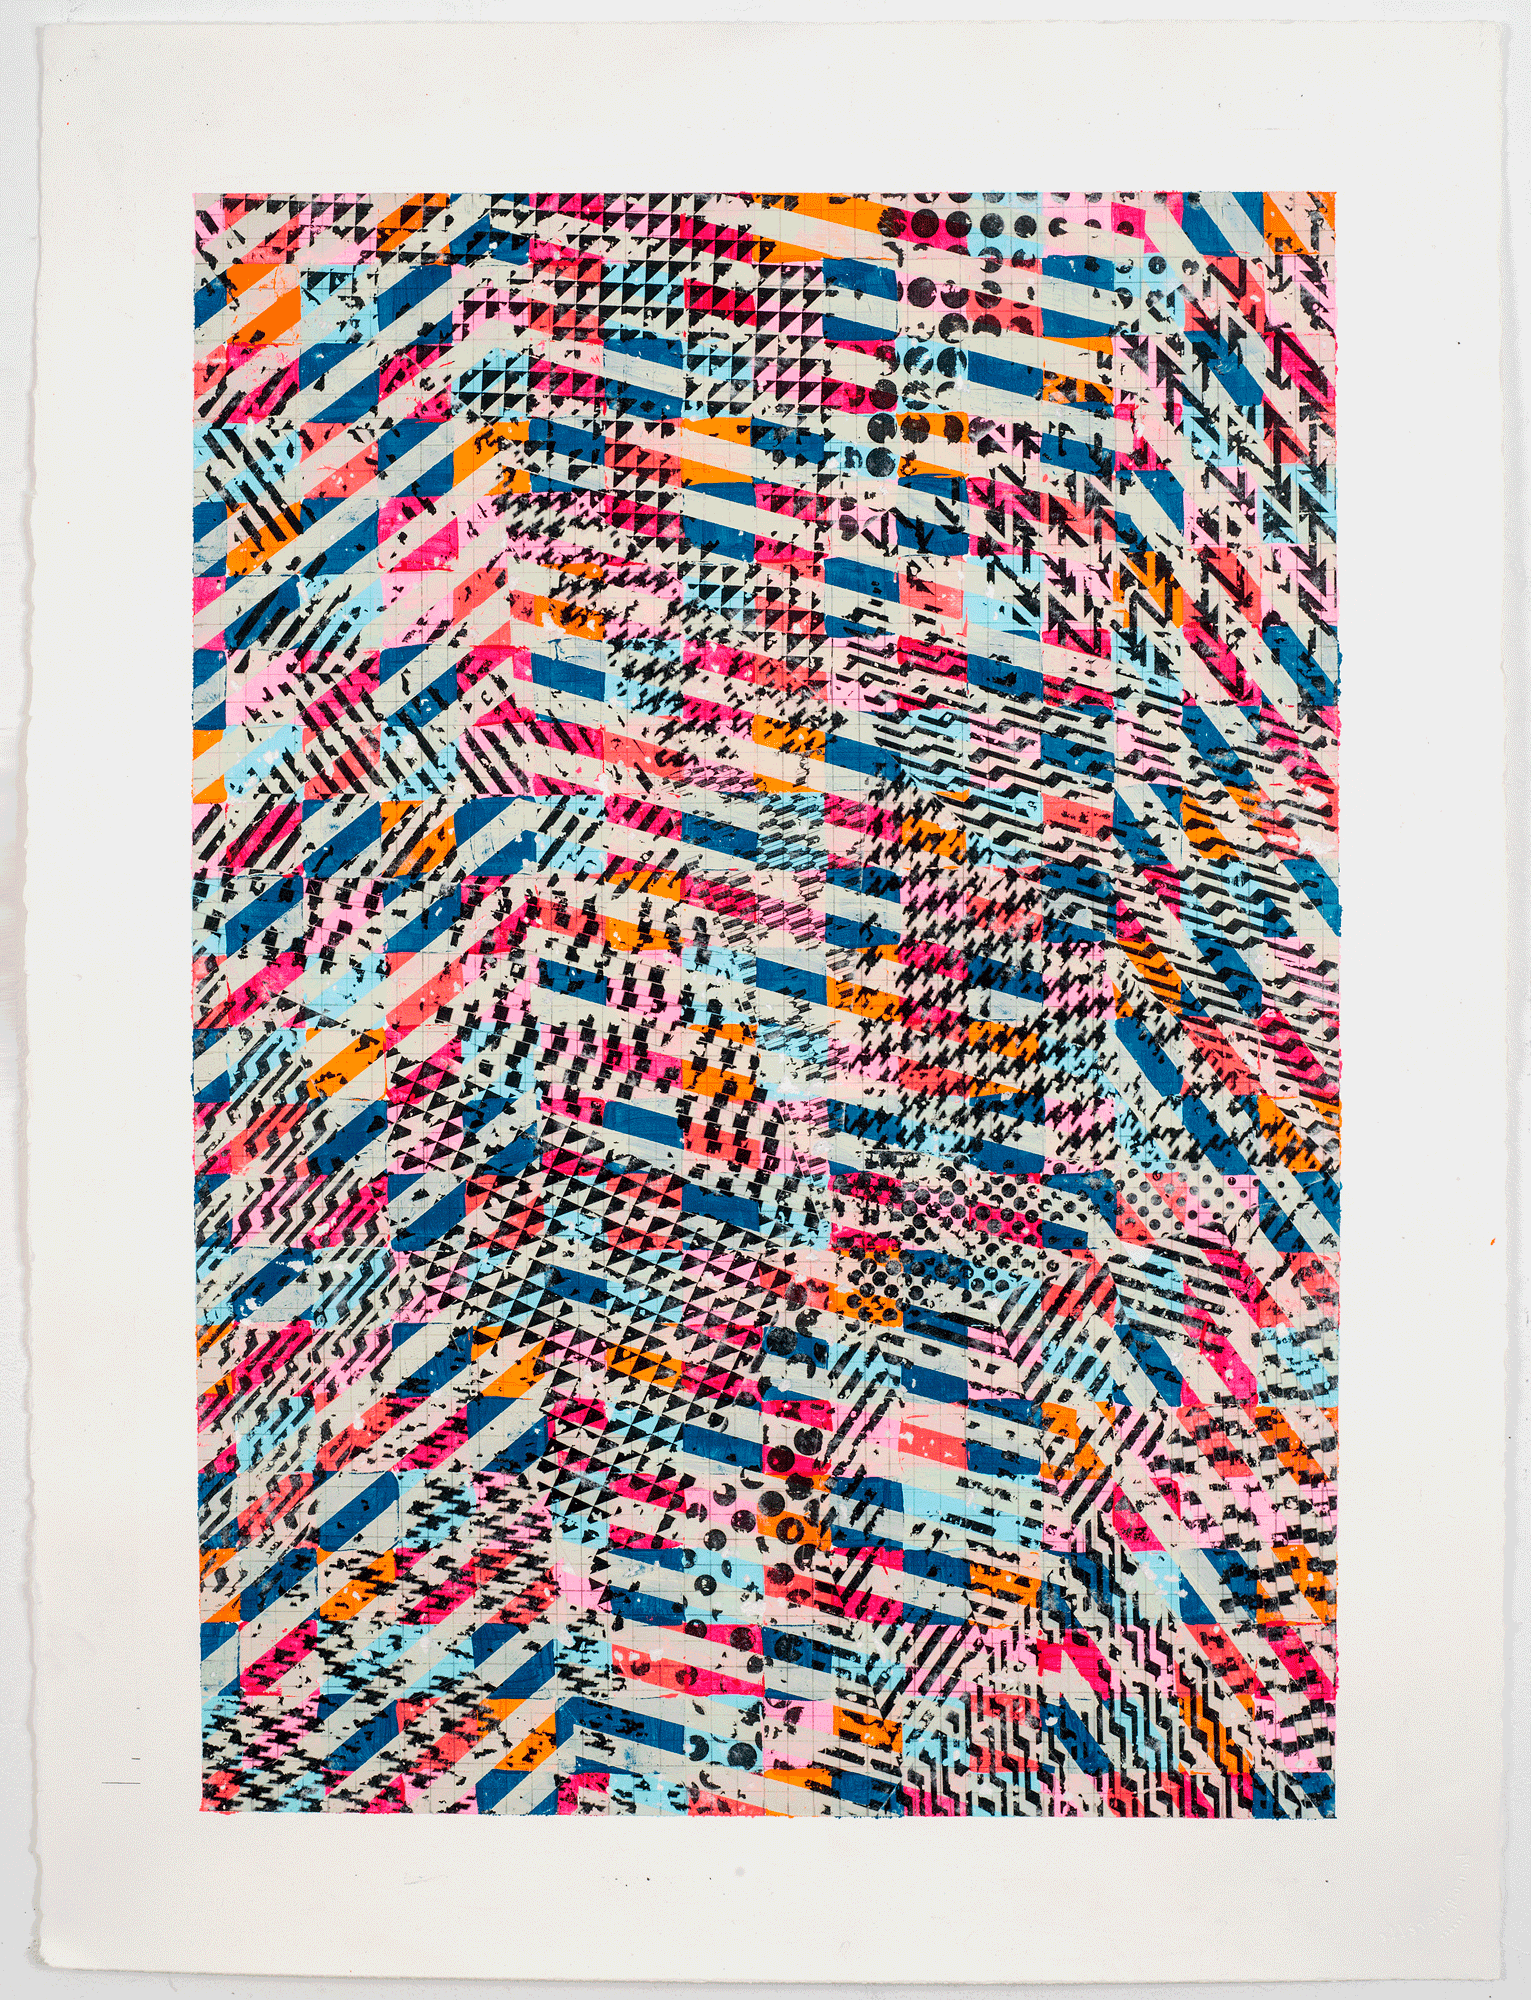  NY1665, 30" X 22", acrylic on paper, 2016 